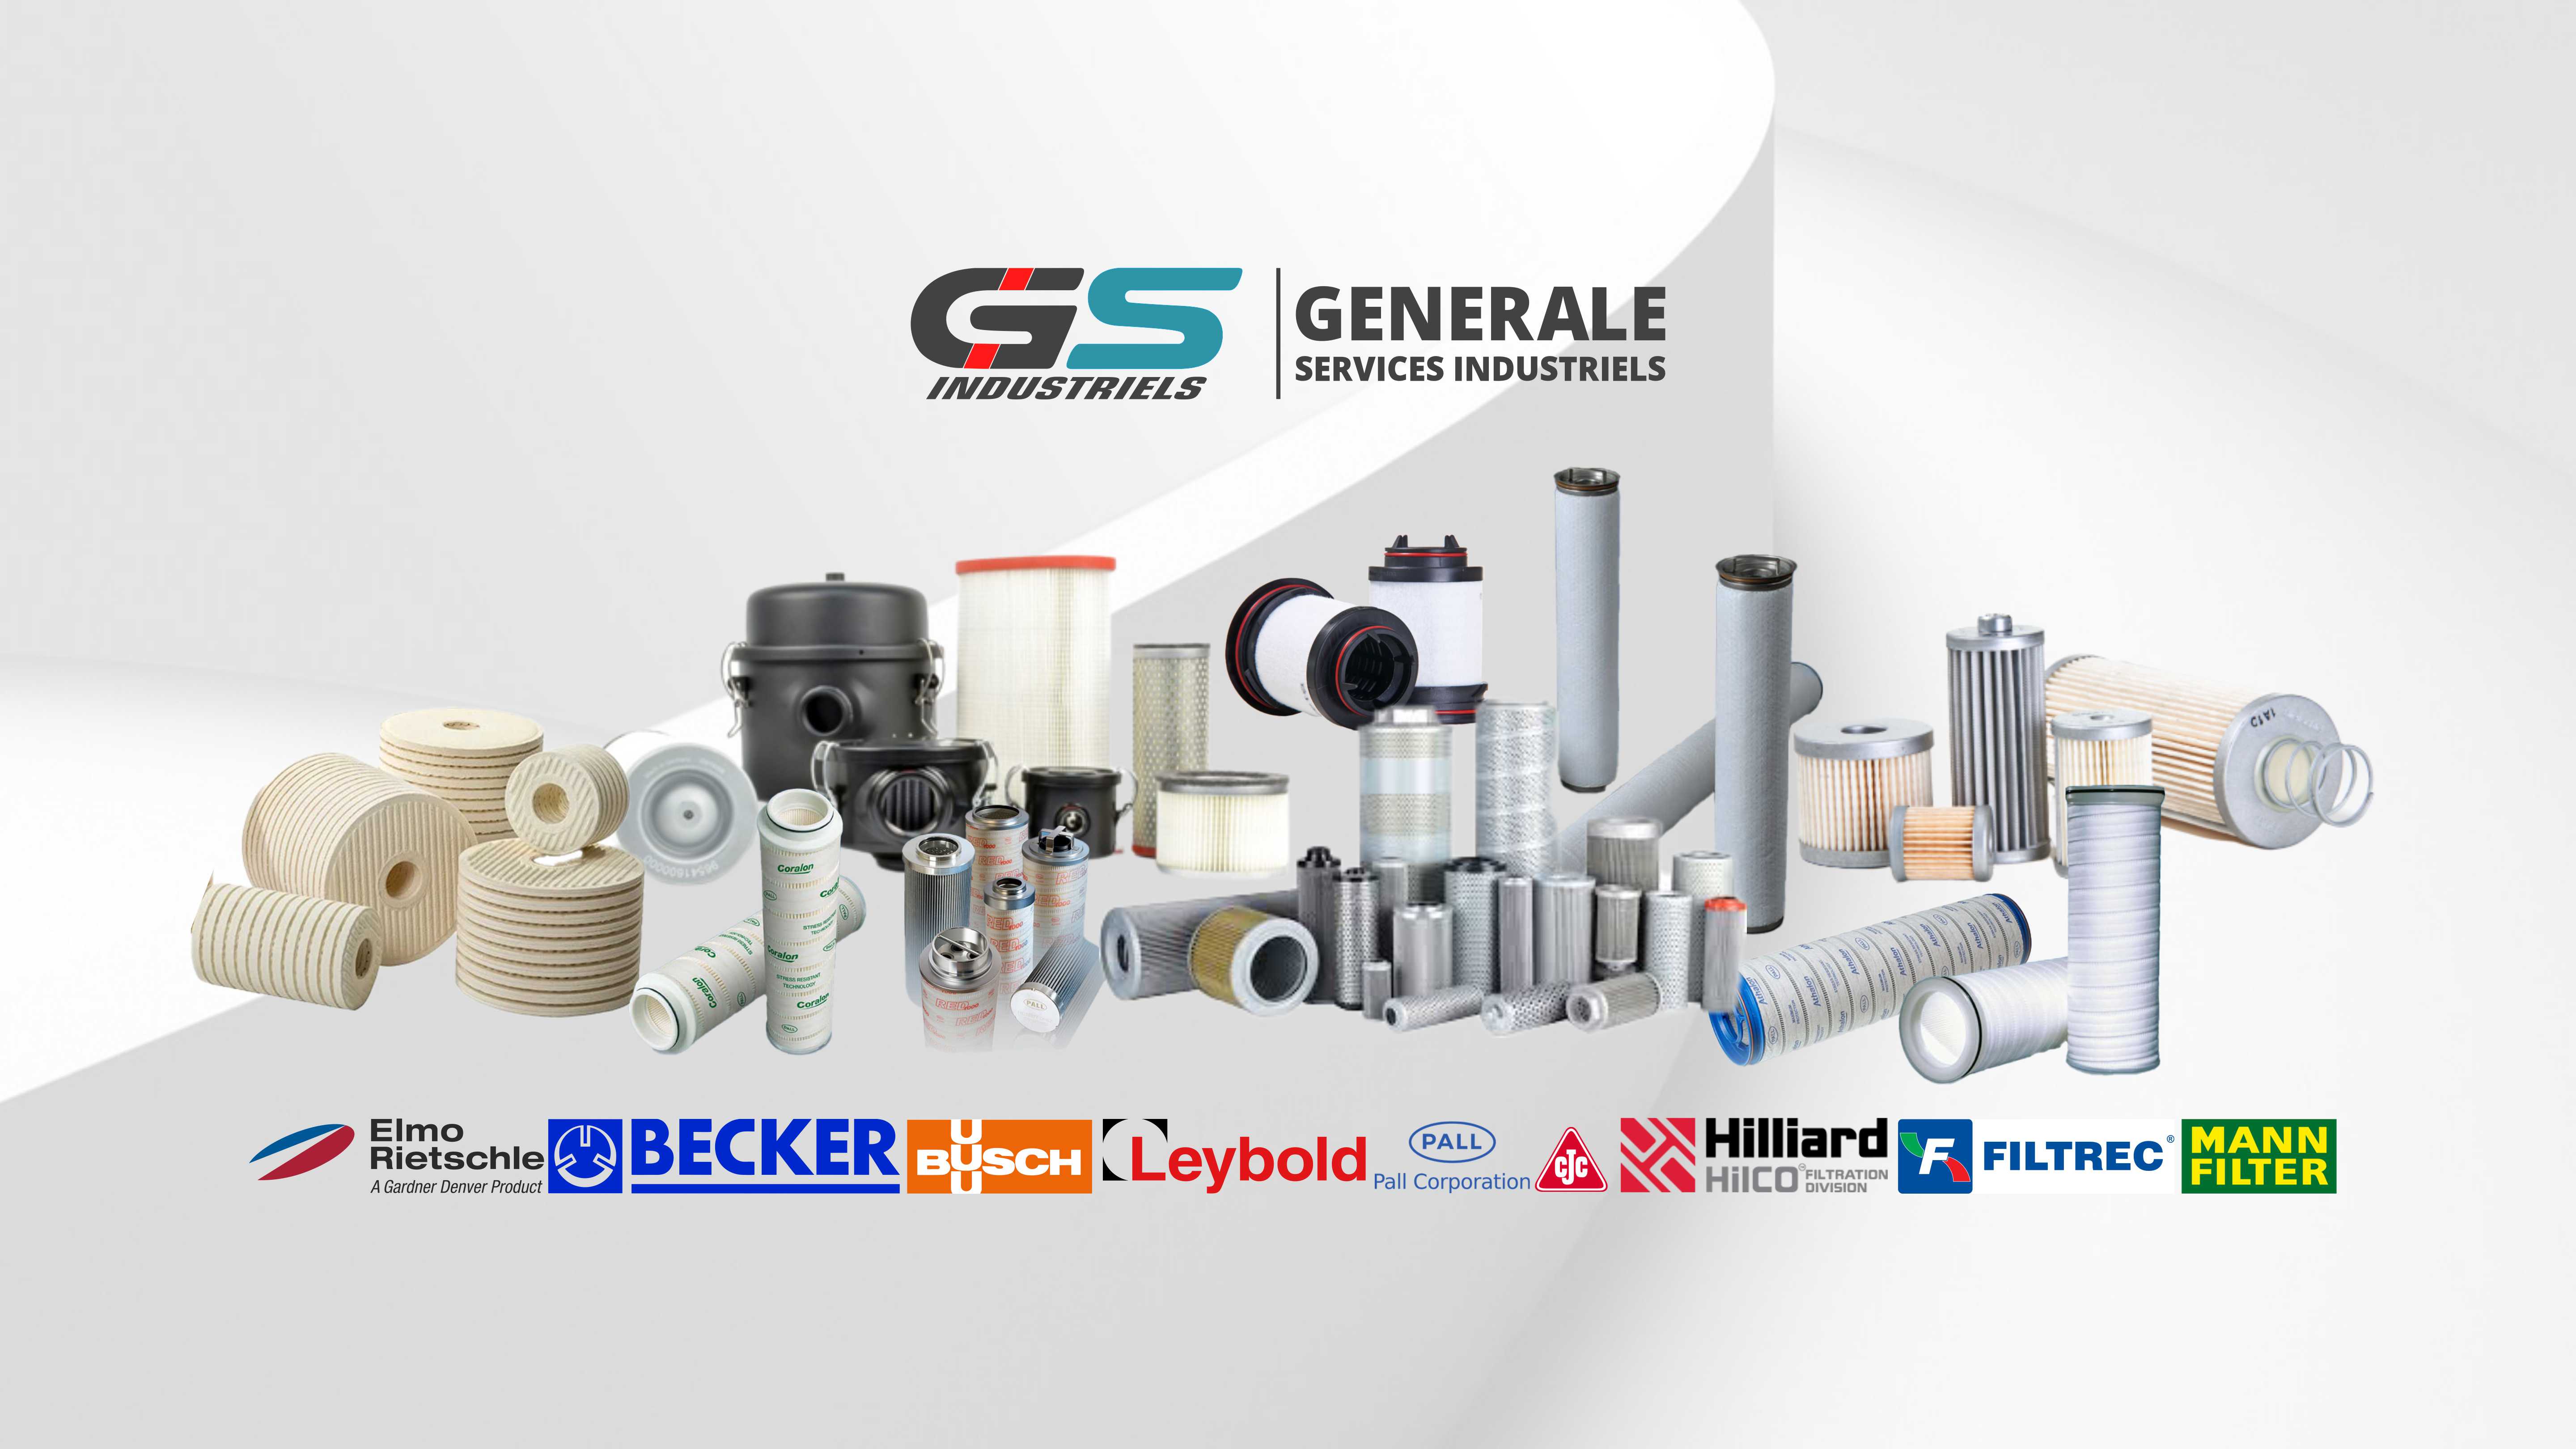 GSI Génerale Services Industries